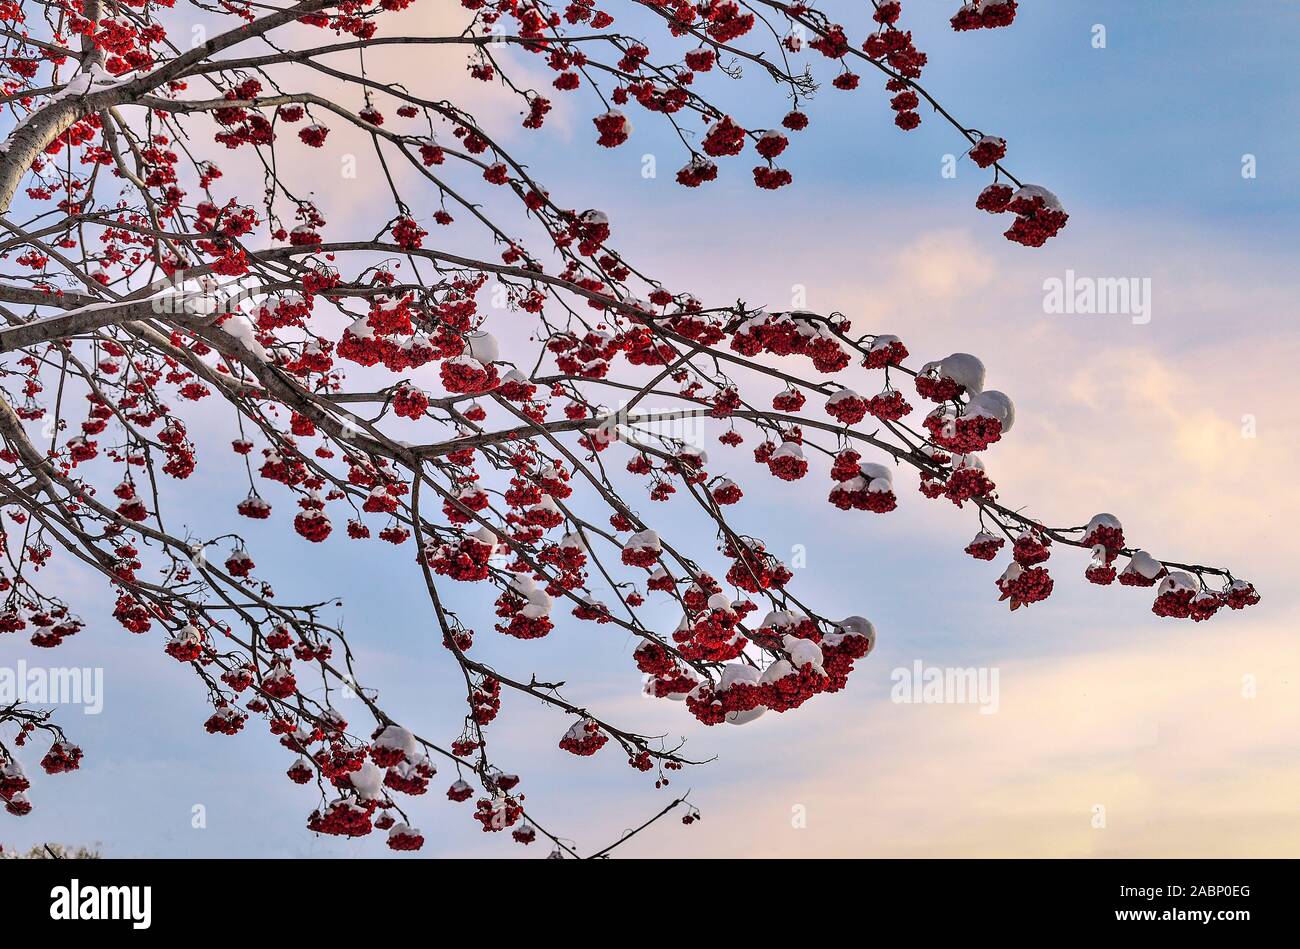 Coperta di neve rowan rami di alberi con bacche rosse - paesaggio invernale sul tramonto o l'alba sullo sfondo del cielo. Decorazioni luminose di bianco inverno natura e Foto Stock